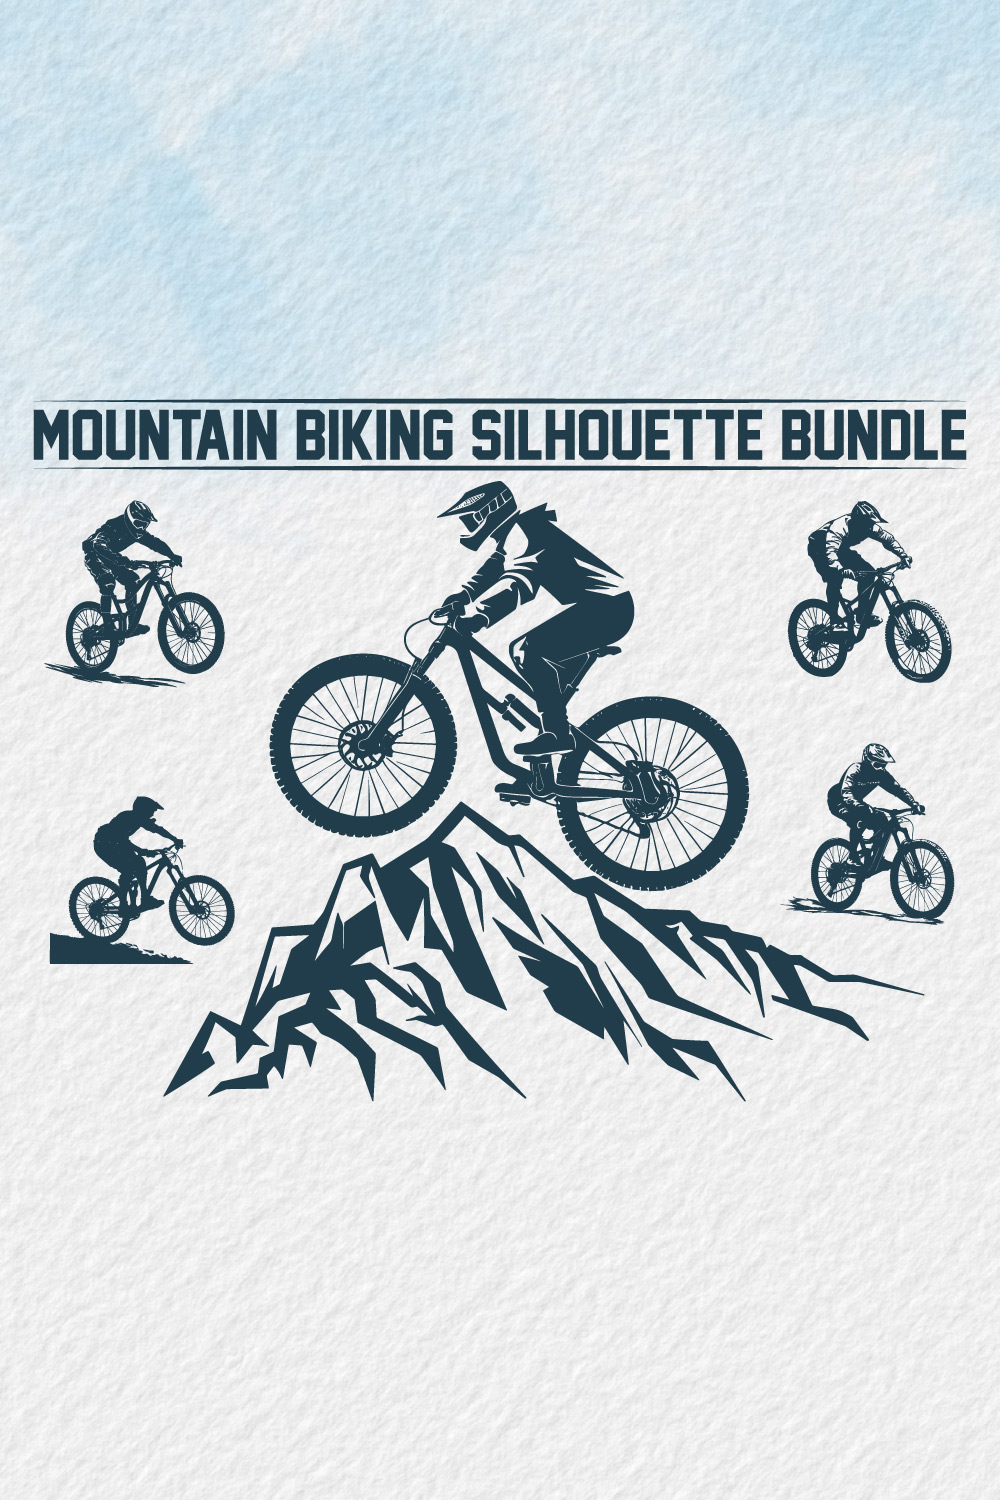 Mountain bike silhouette bundle, Man Cyclist Mountain Biker, Silhouette a cyclist riding mountain bike Vector, Mountain Biking, bike silhouette bundle pinterest preview image.